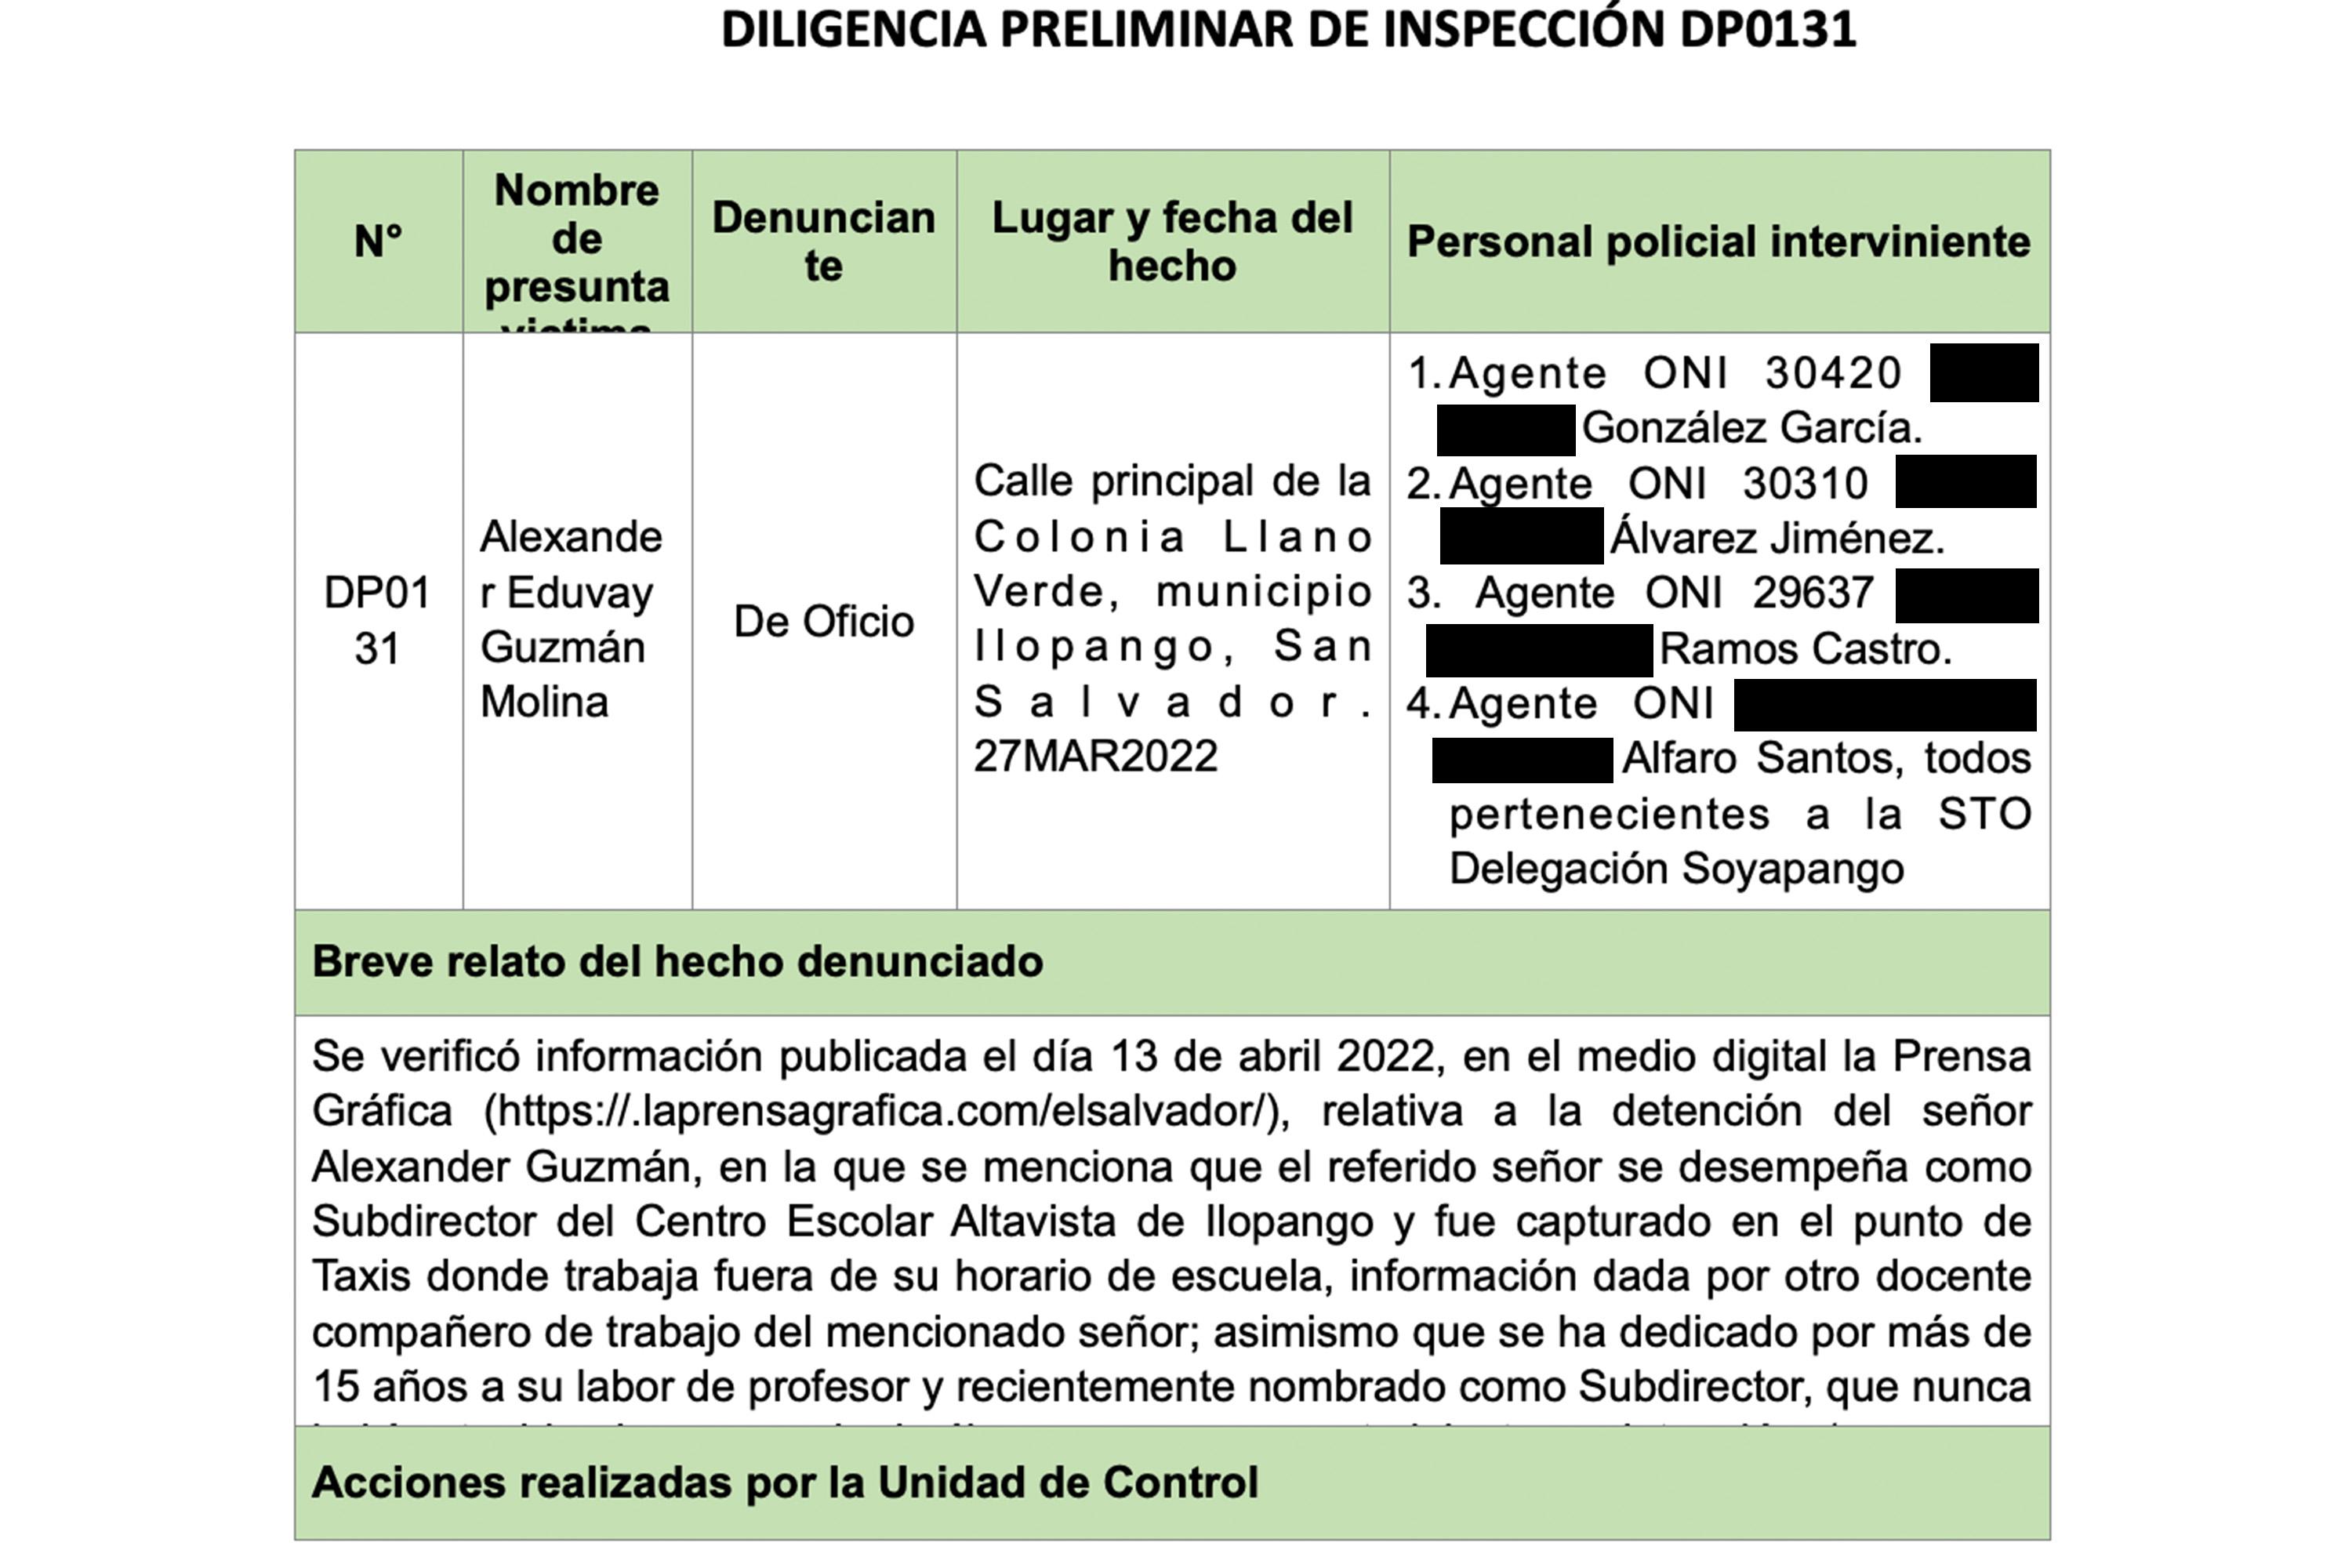 Documento de la Unidad de Control Interno de la Policía, ente que investigó el caso del profesor como una captura arbitraria.